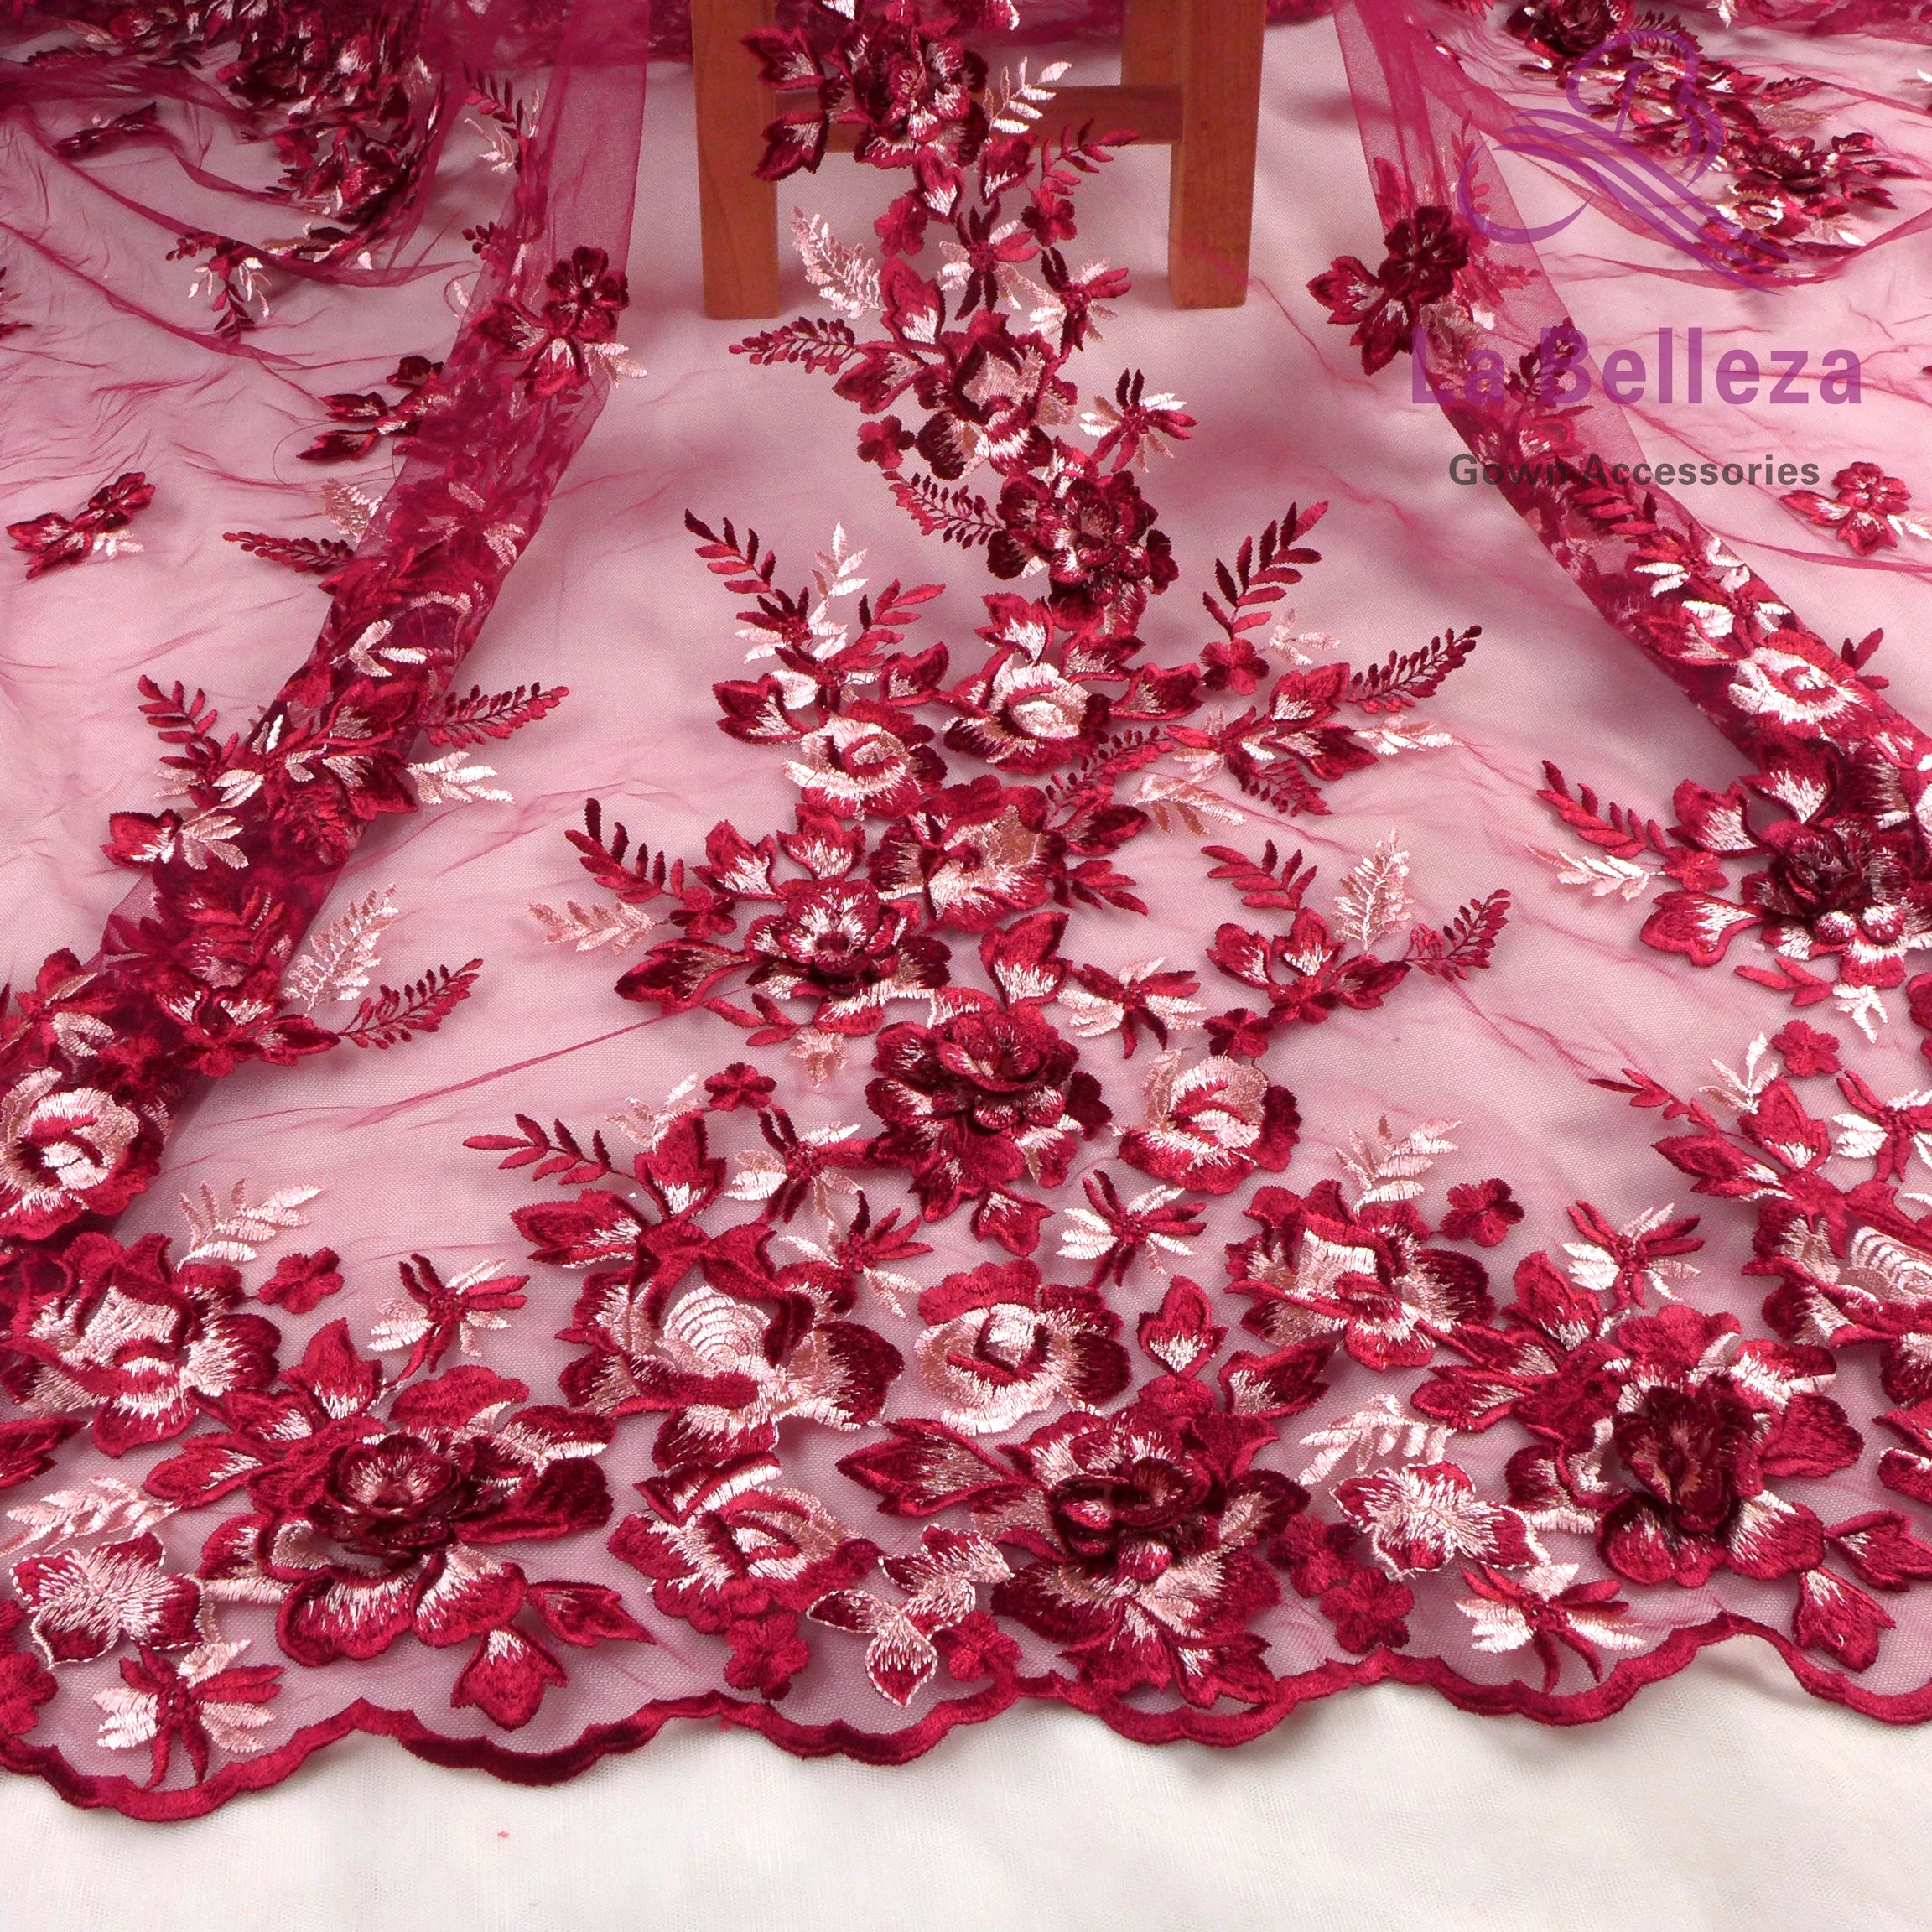 La Belleza дизайн кружева, Розовый 3D цветы кружева ткань, синий, вино 3D Цветы Кружева Ткань вечернее платье кружевная ткань 1 ярд